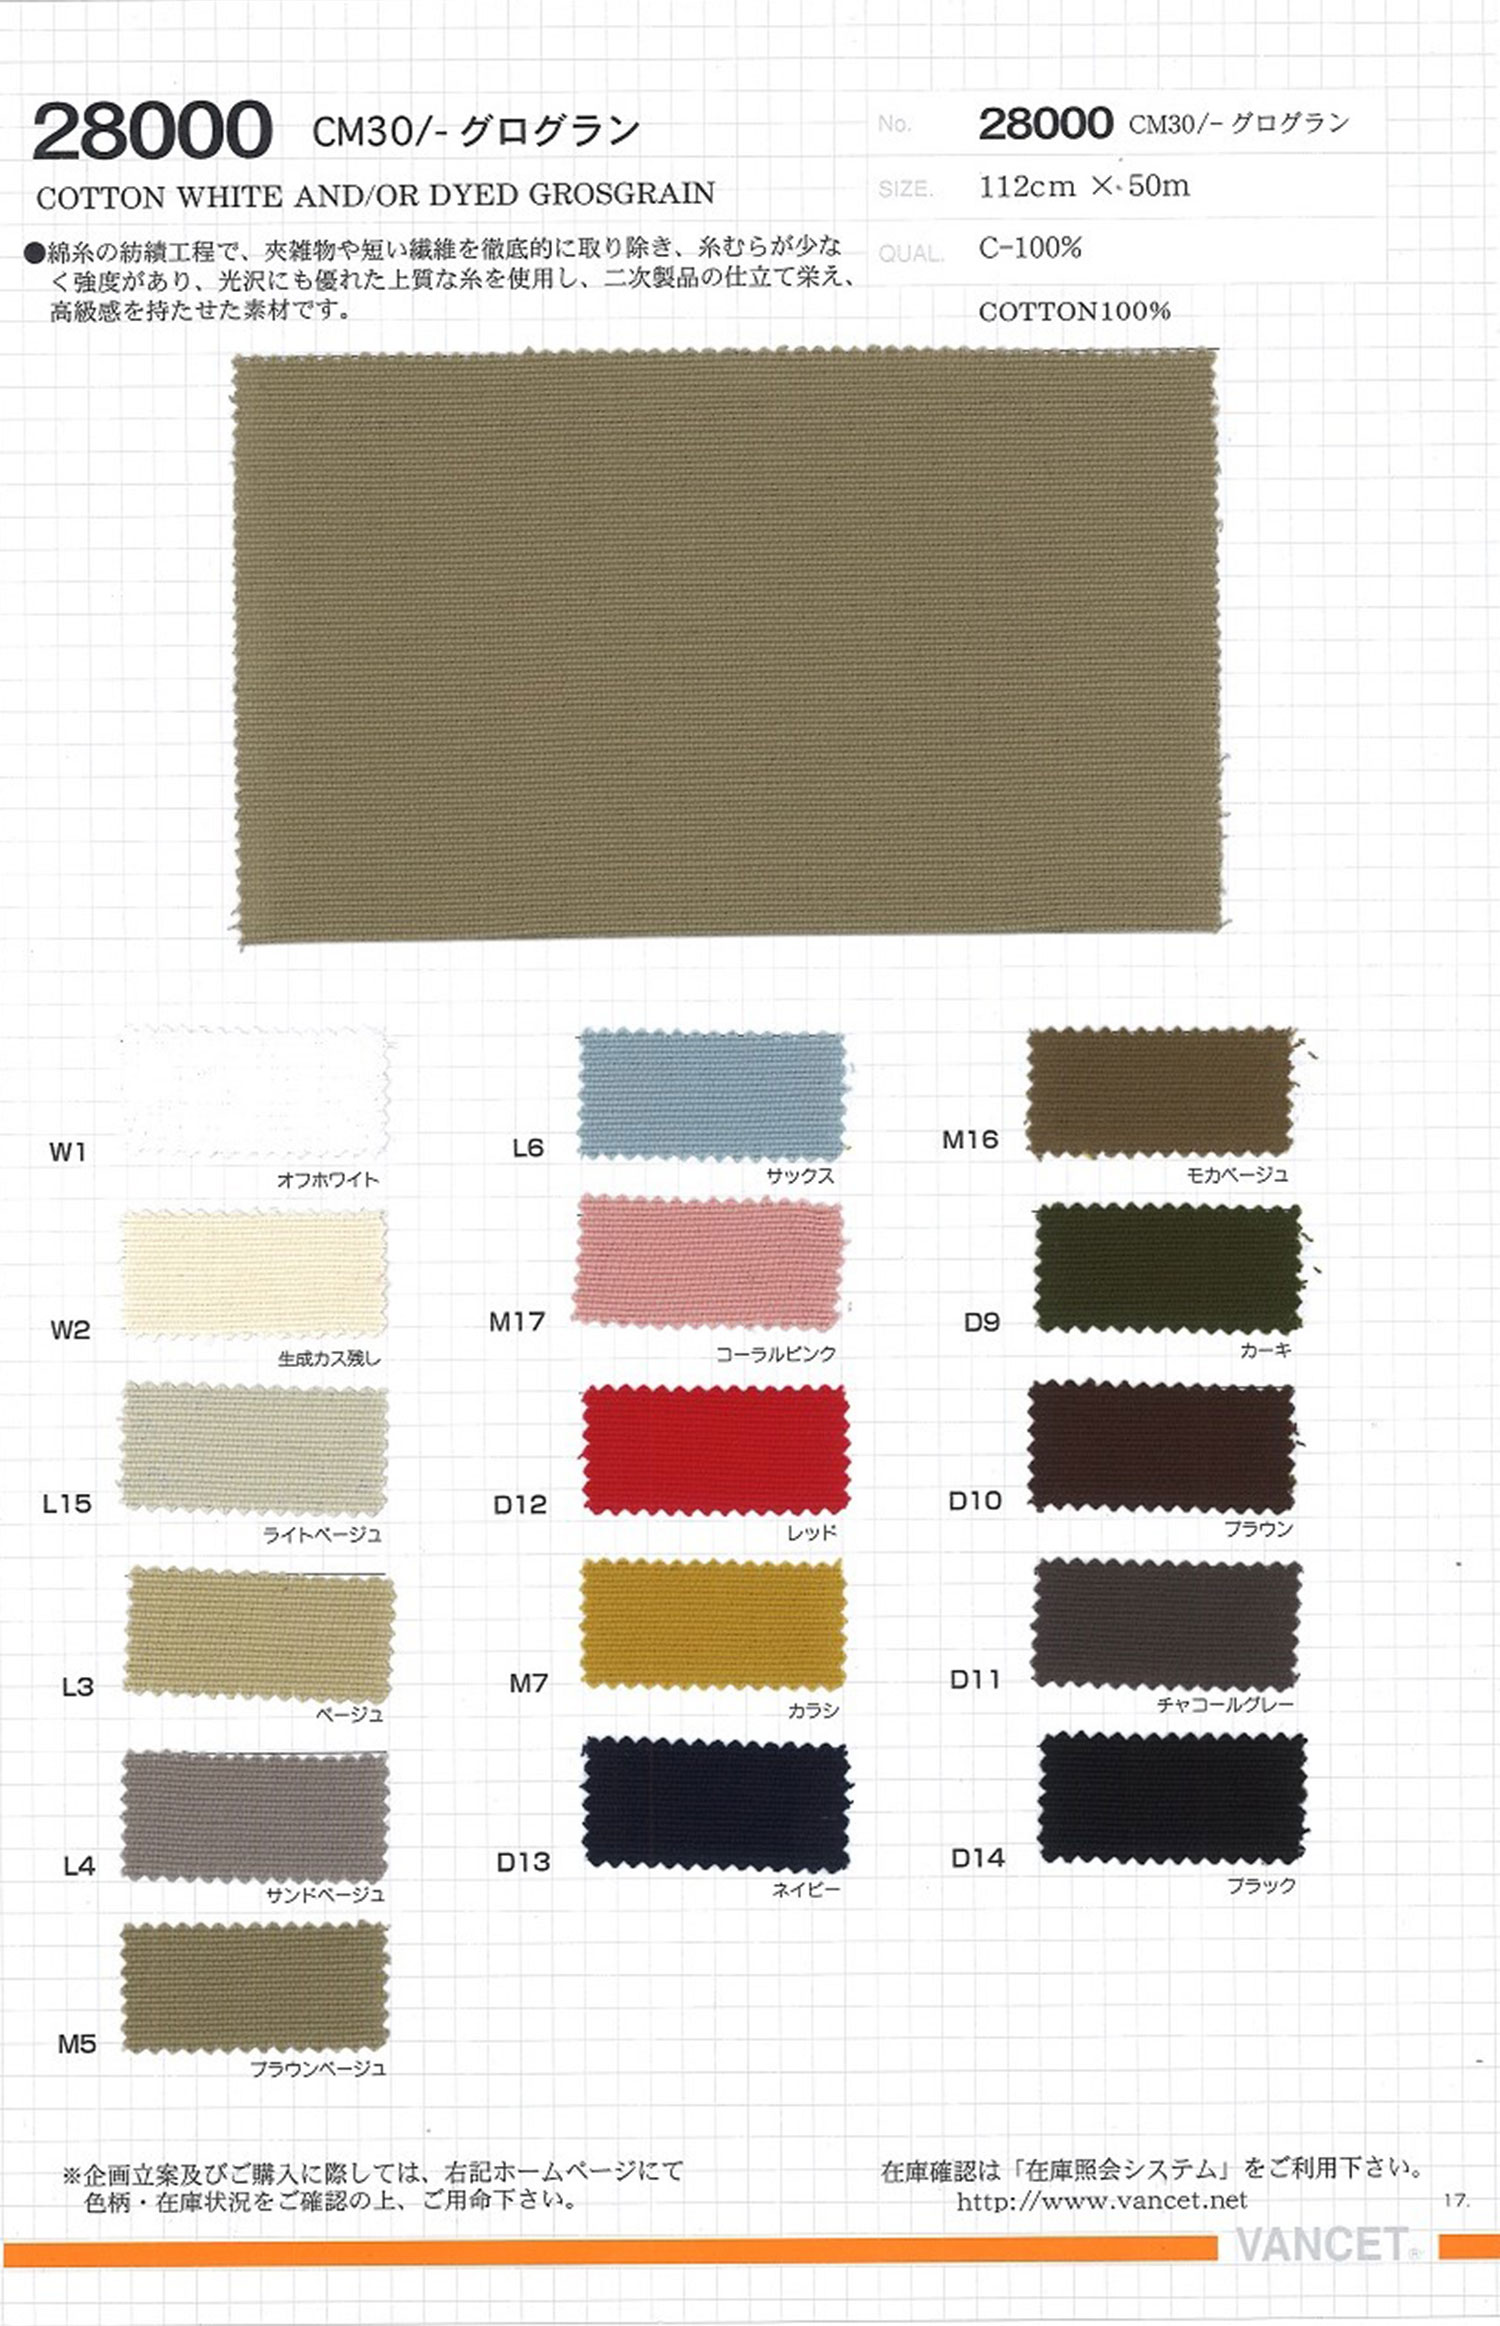 28000 CM30 /-Grosgrain[Textile / Fabric] VANCET